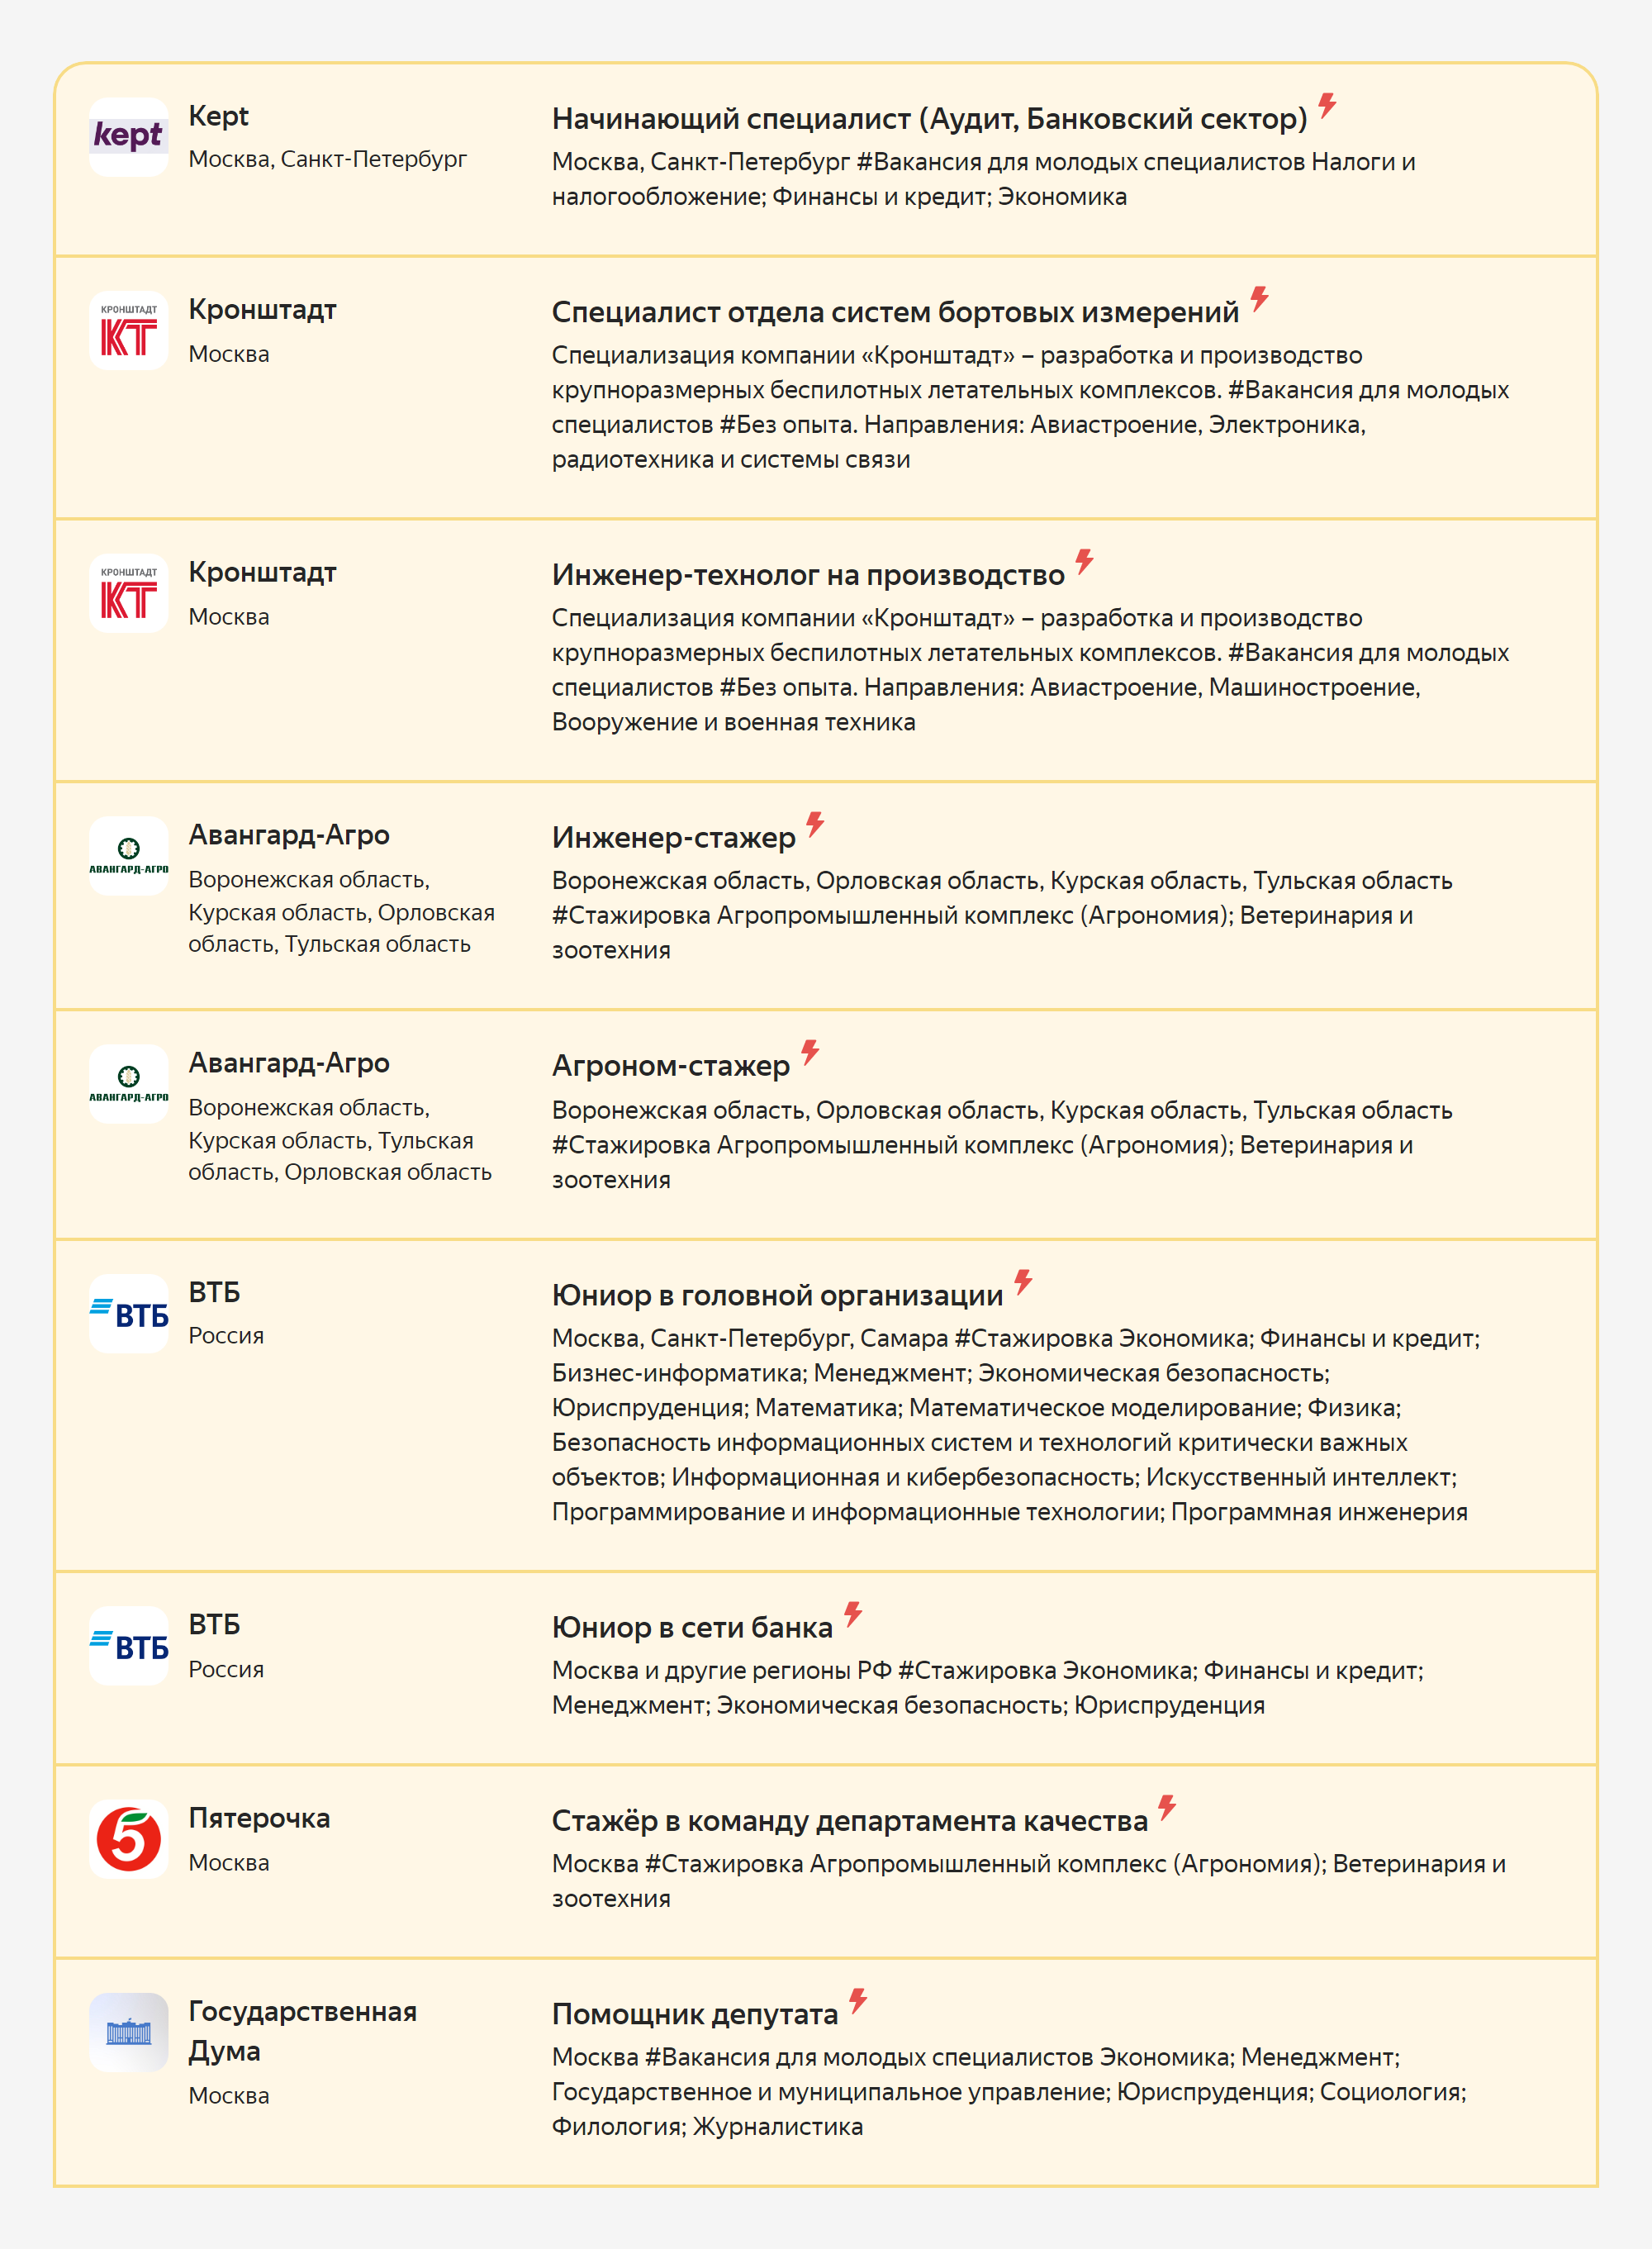 Актуальные вакансии на карьерном портале. Источник: yandex.ru